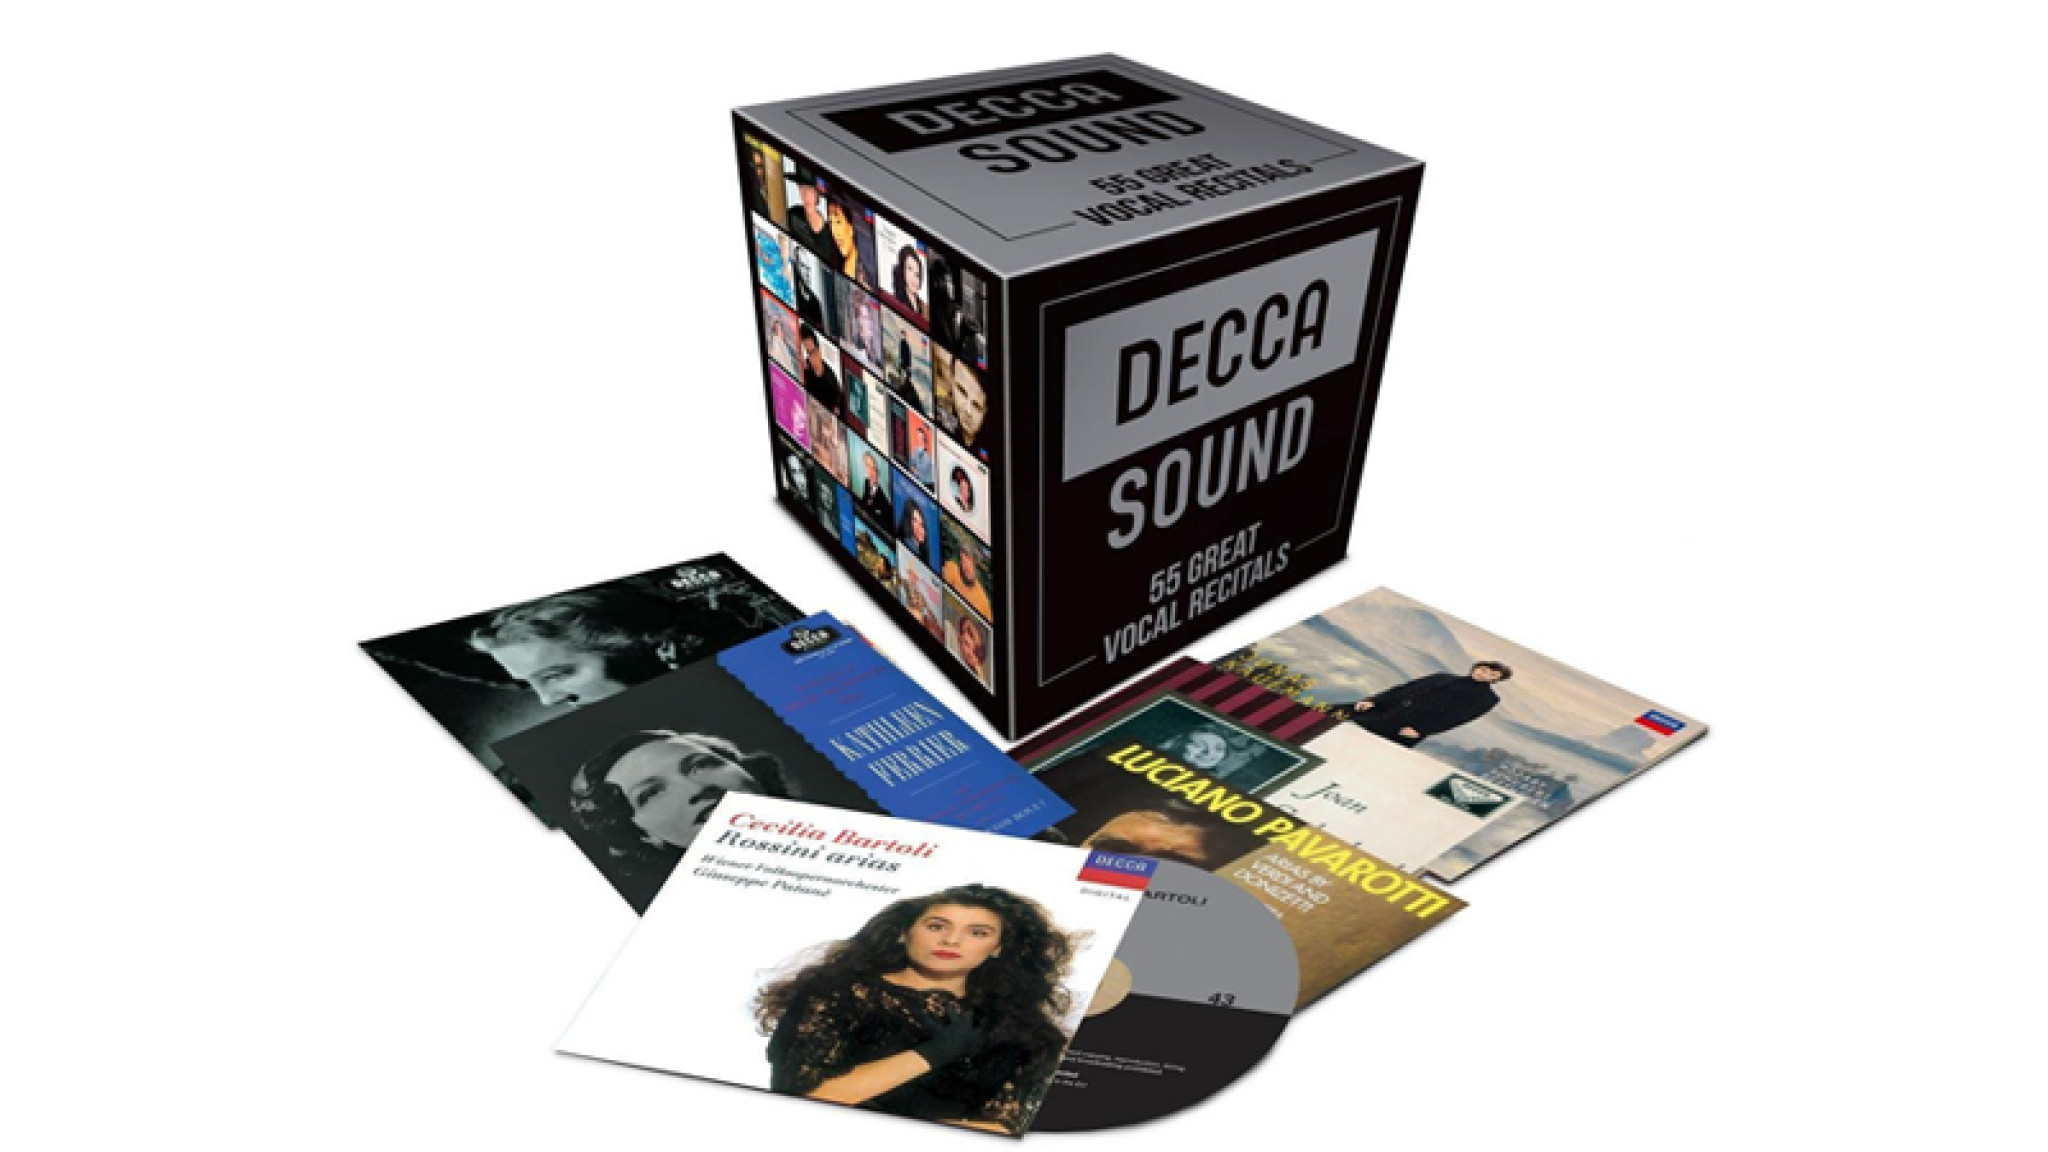 Decca Sound - 55 Great Vocal Recitals